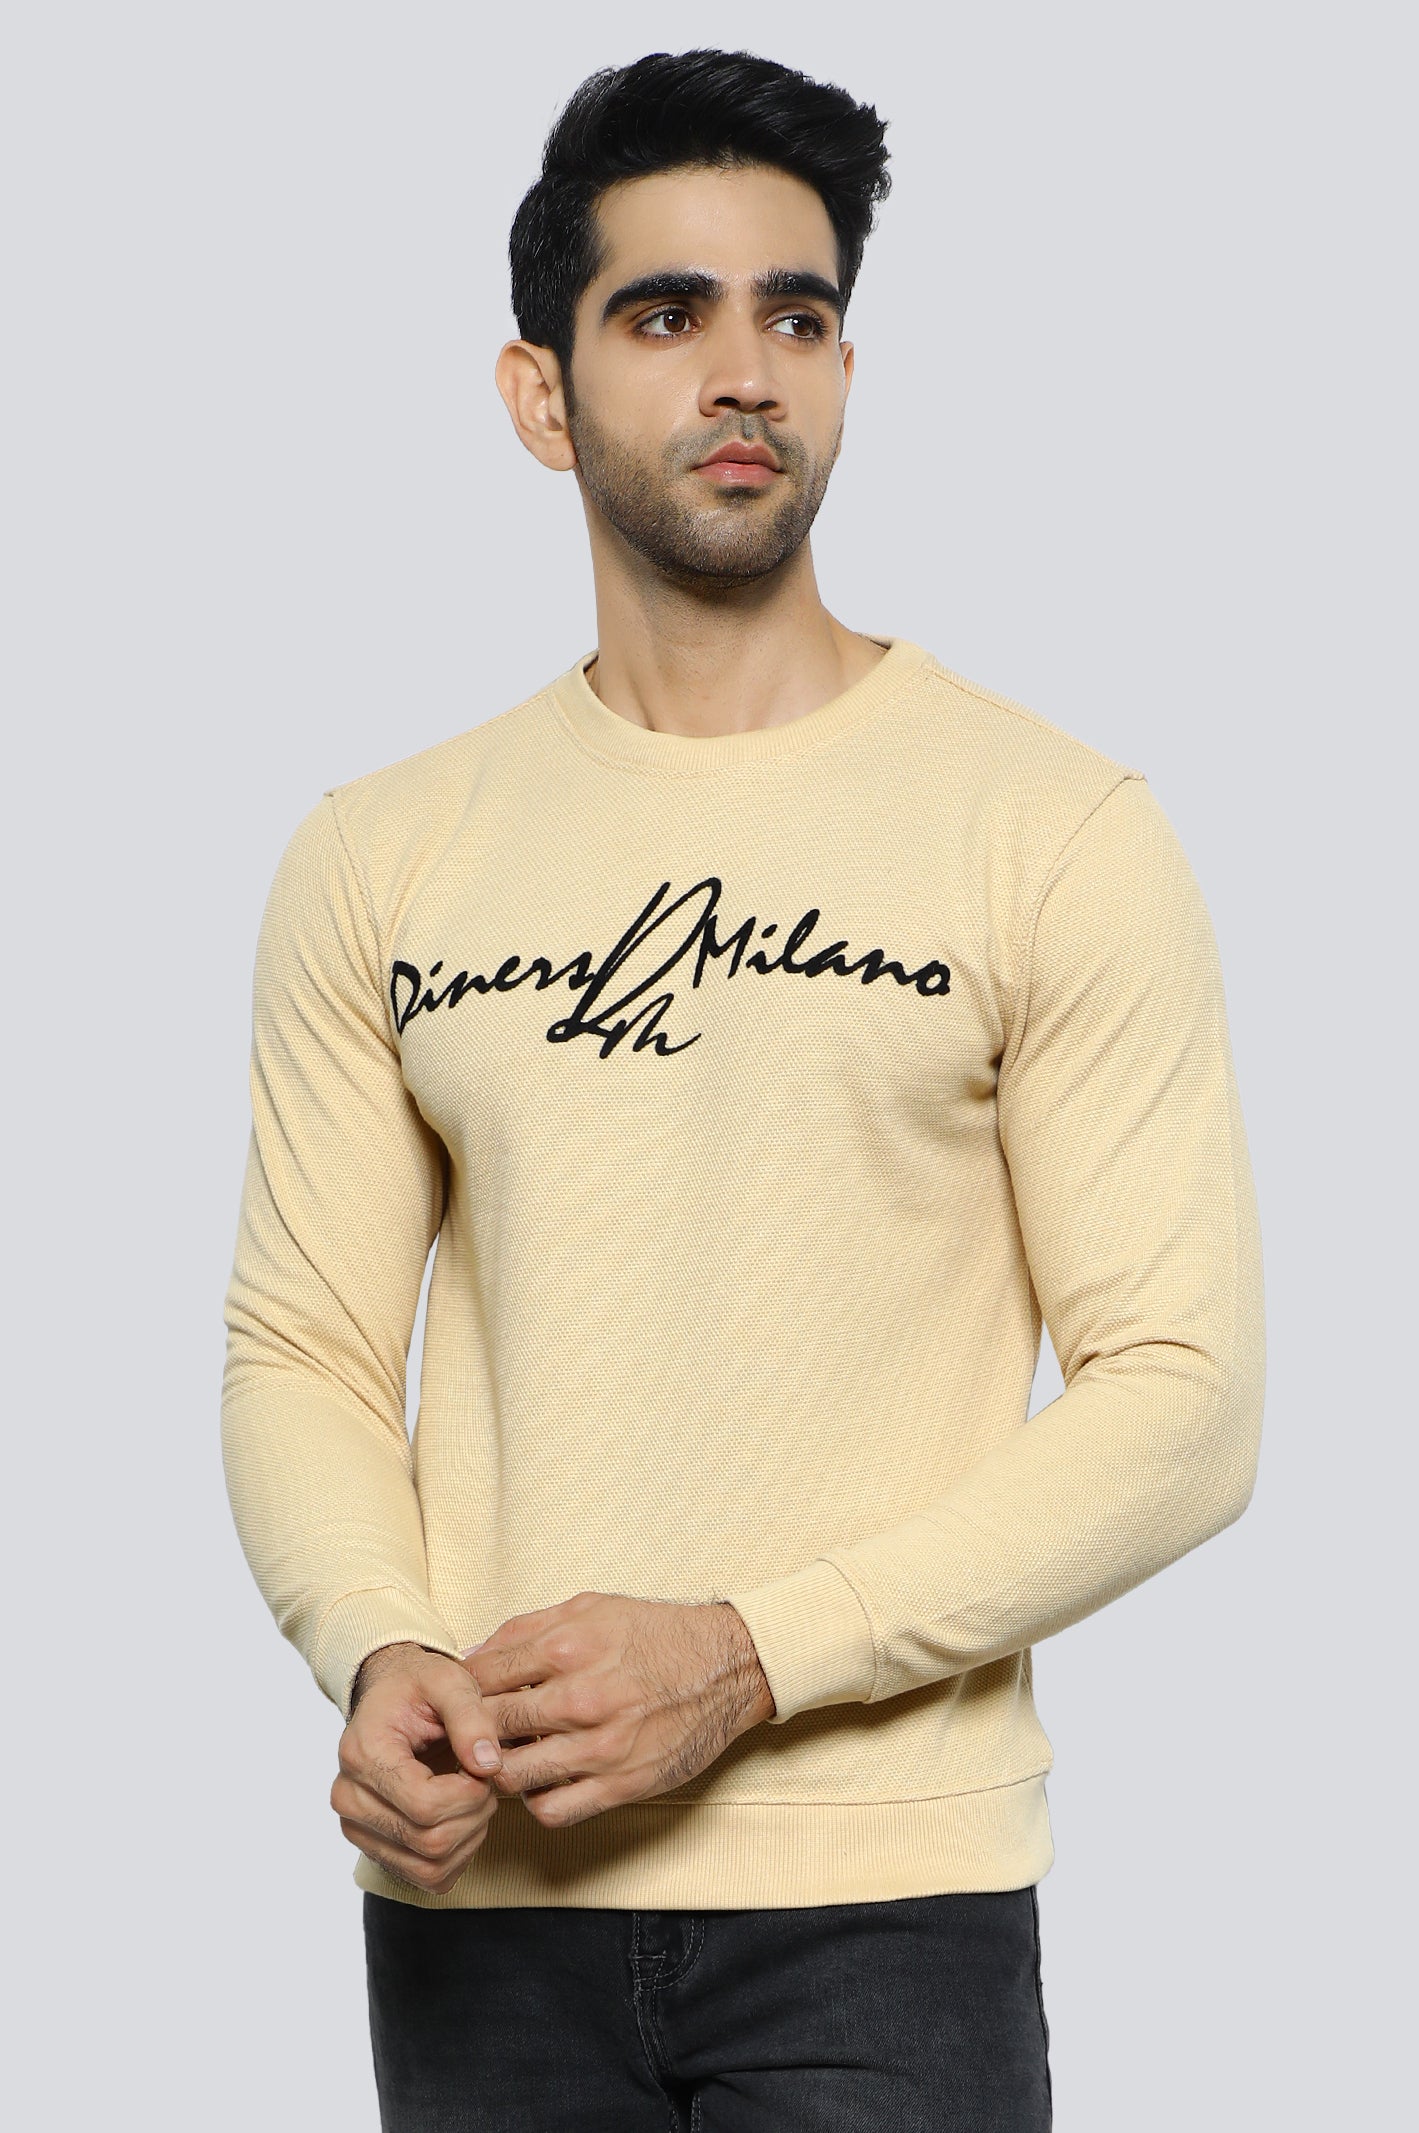 Sweatshirt for Men's